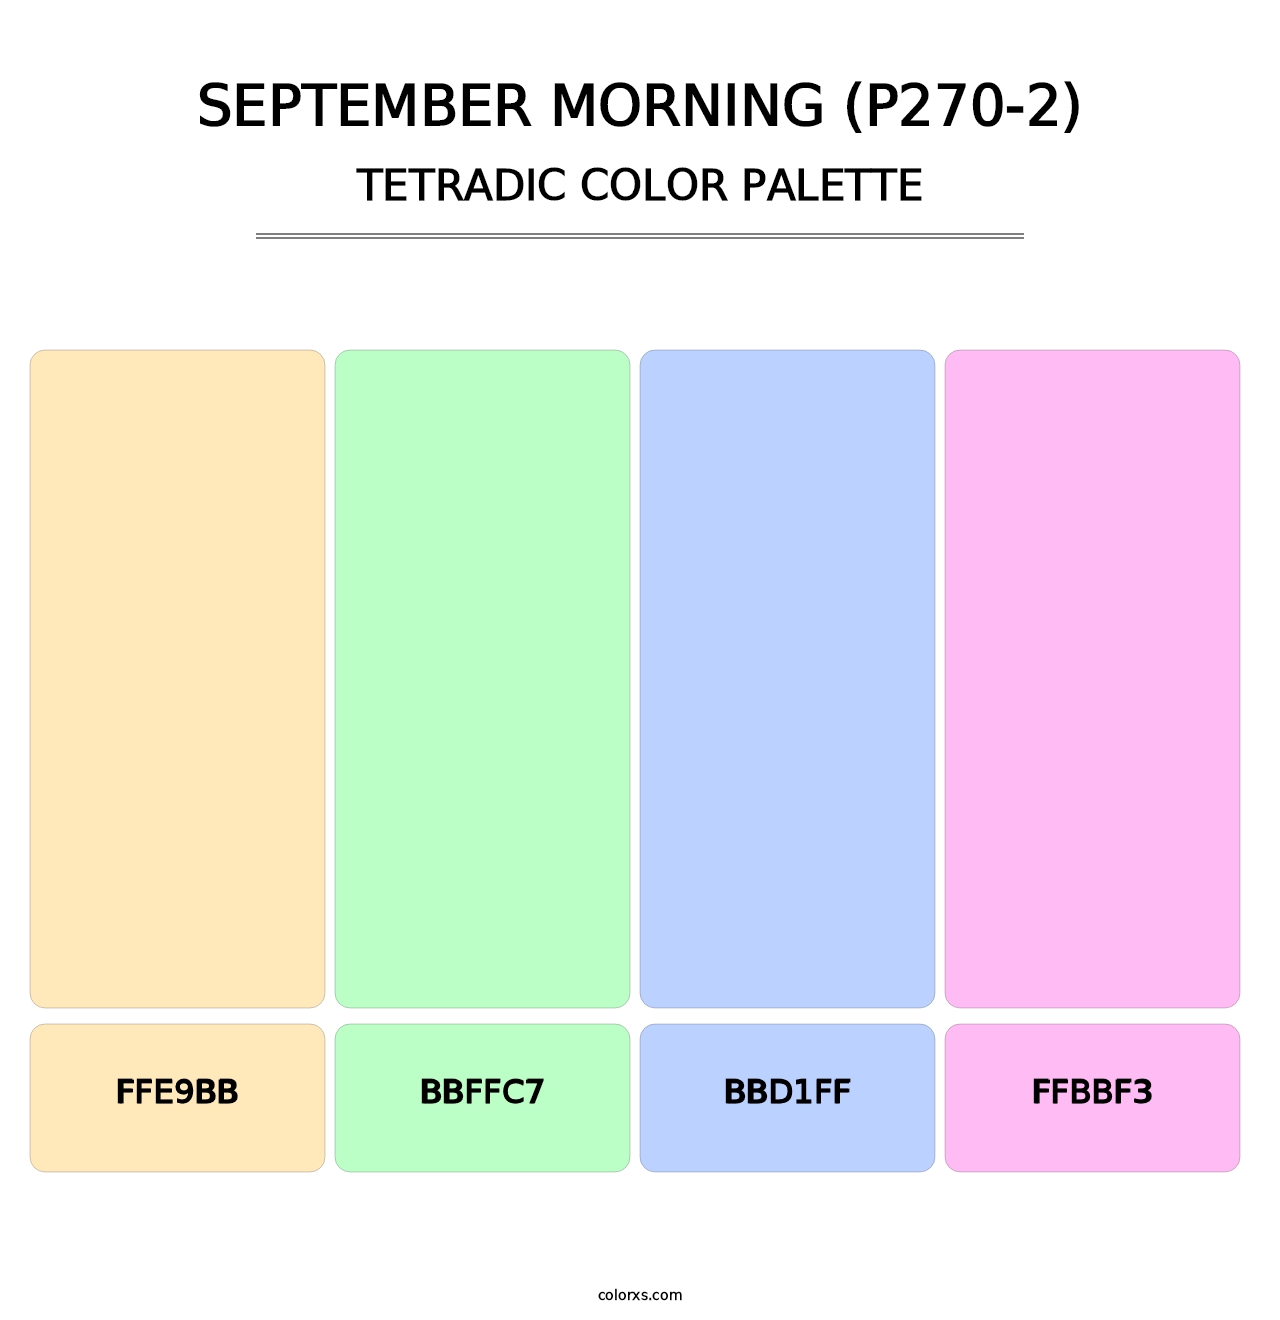 September Morning (P270-2) - Tetradic Color Palette